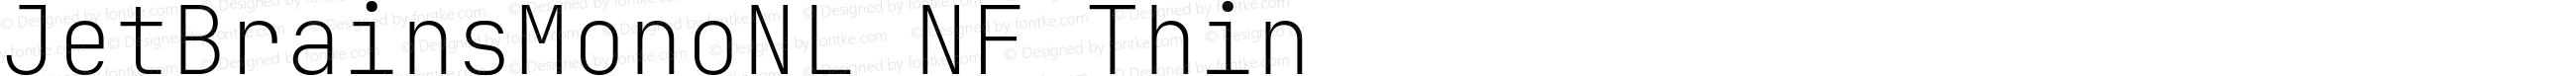 JetBrains Mono NL Thin Nerd Font Complete Windows Compatible